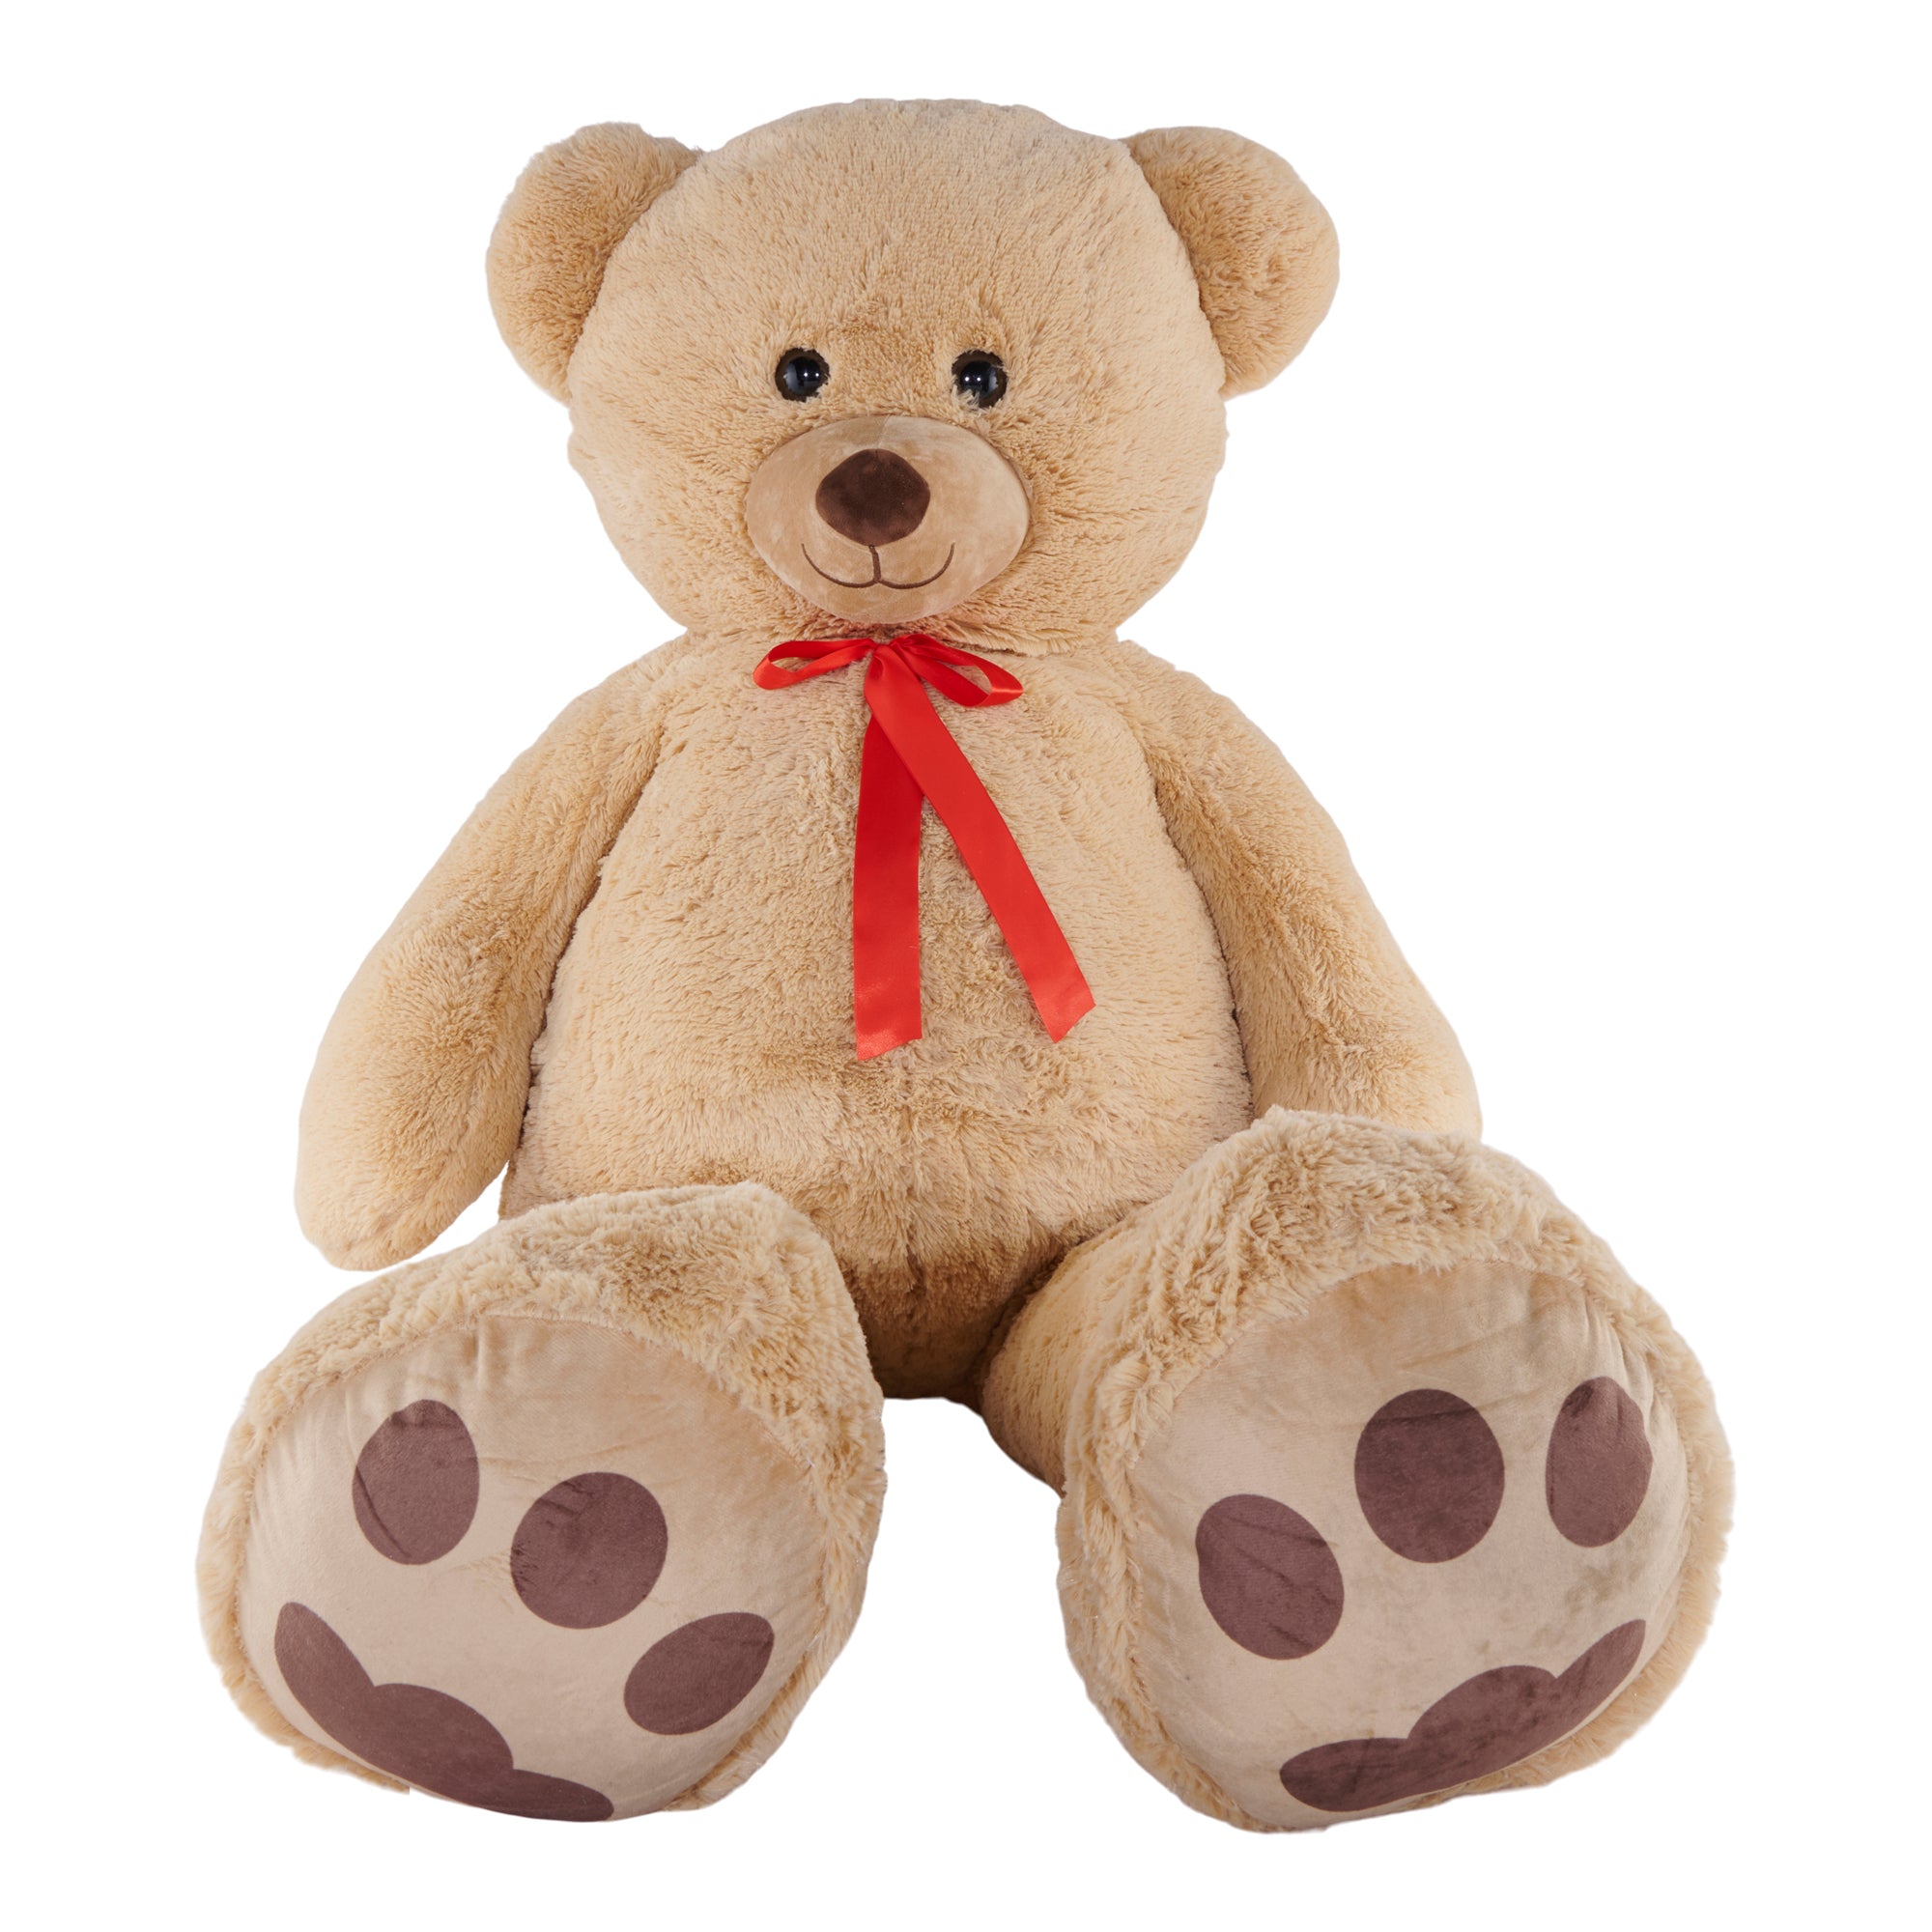 Giant Teddy Bear Harry, Large Teddy Bears